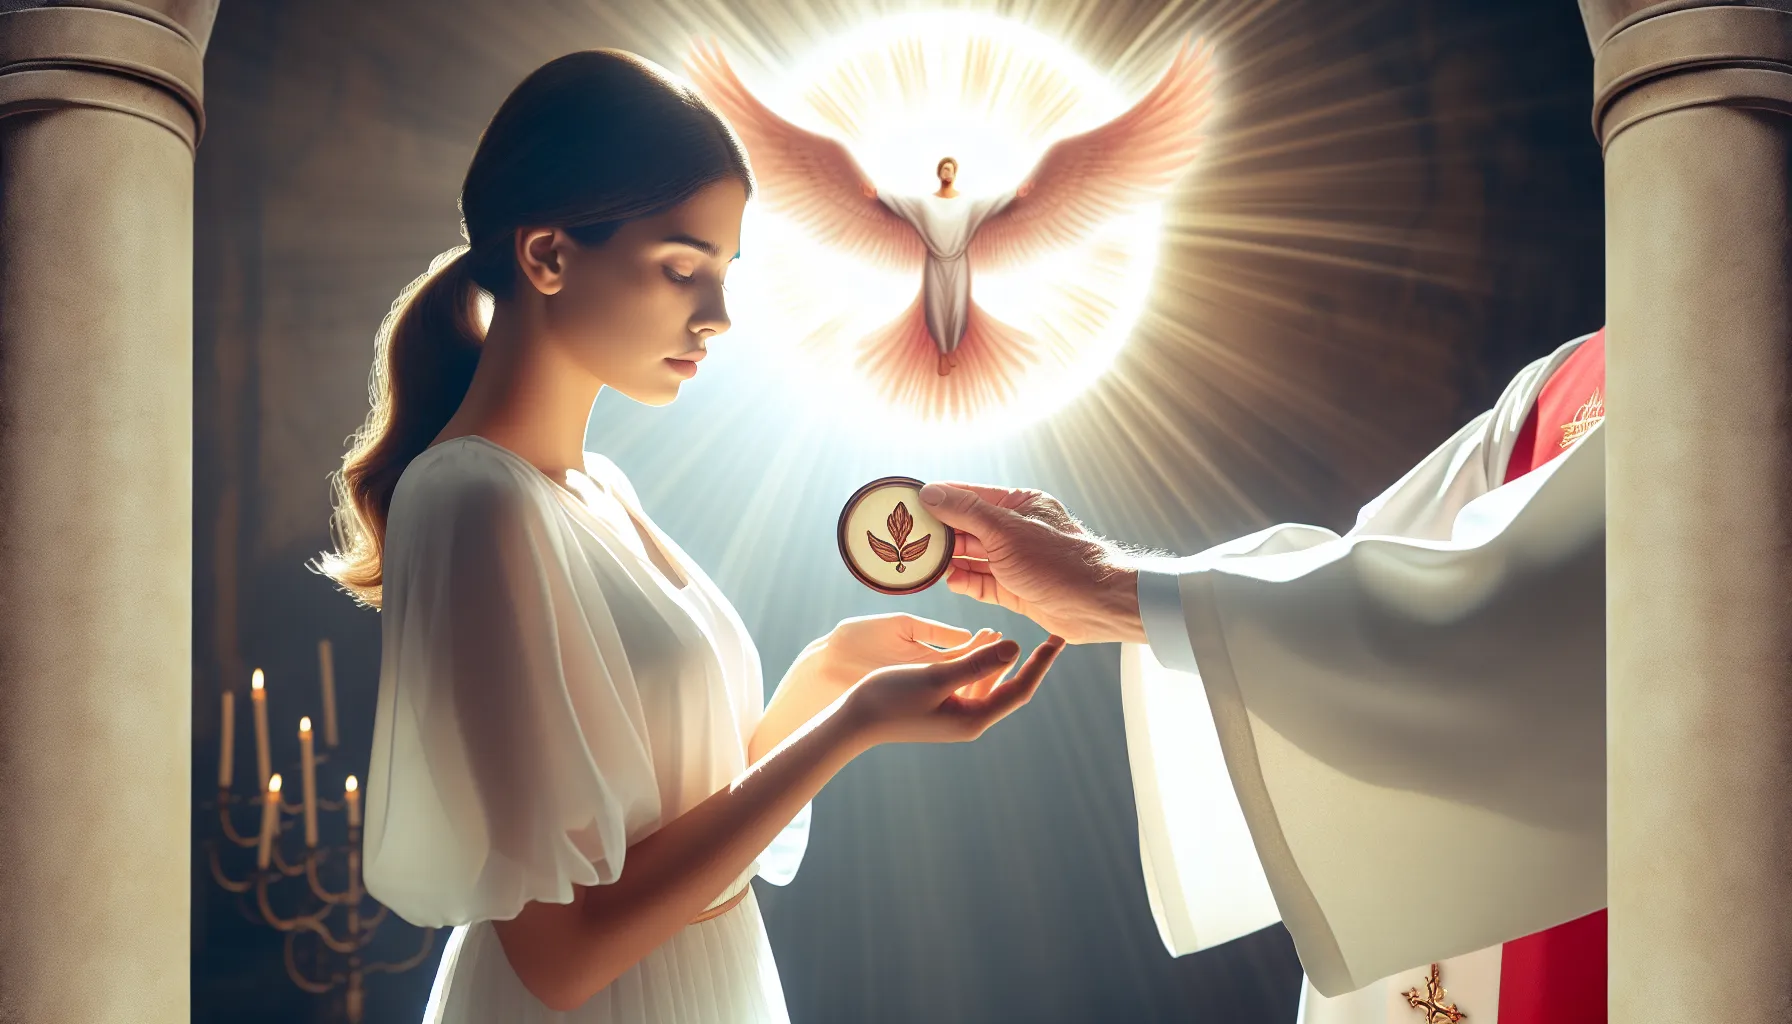 Imagen ilustrativa de una persona recibiendo el sello del Espíritu Santo en una representación simbólica de la fe cristiana.